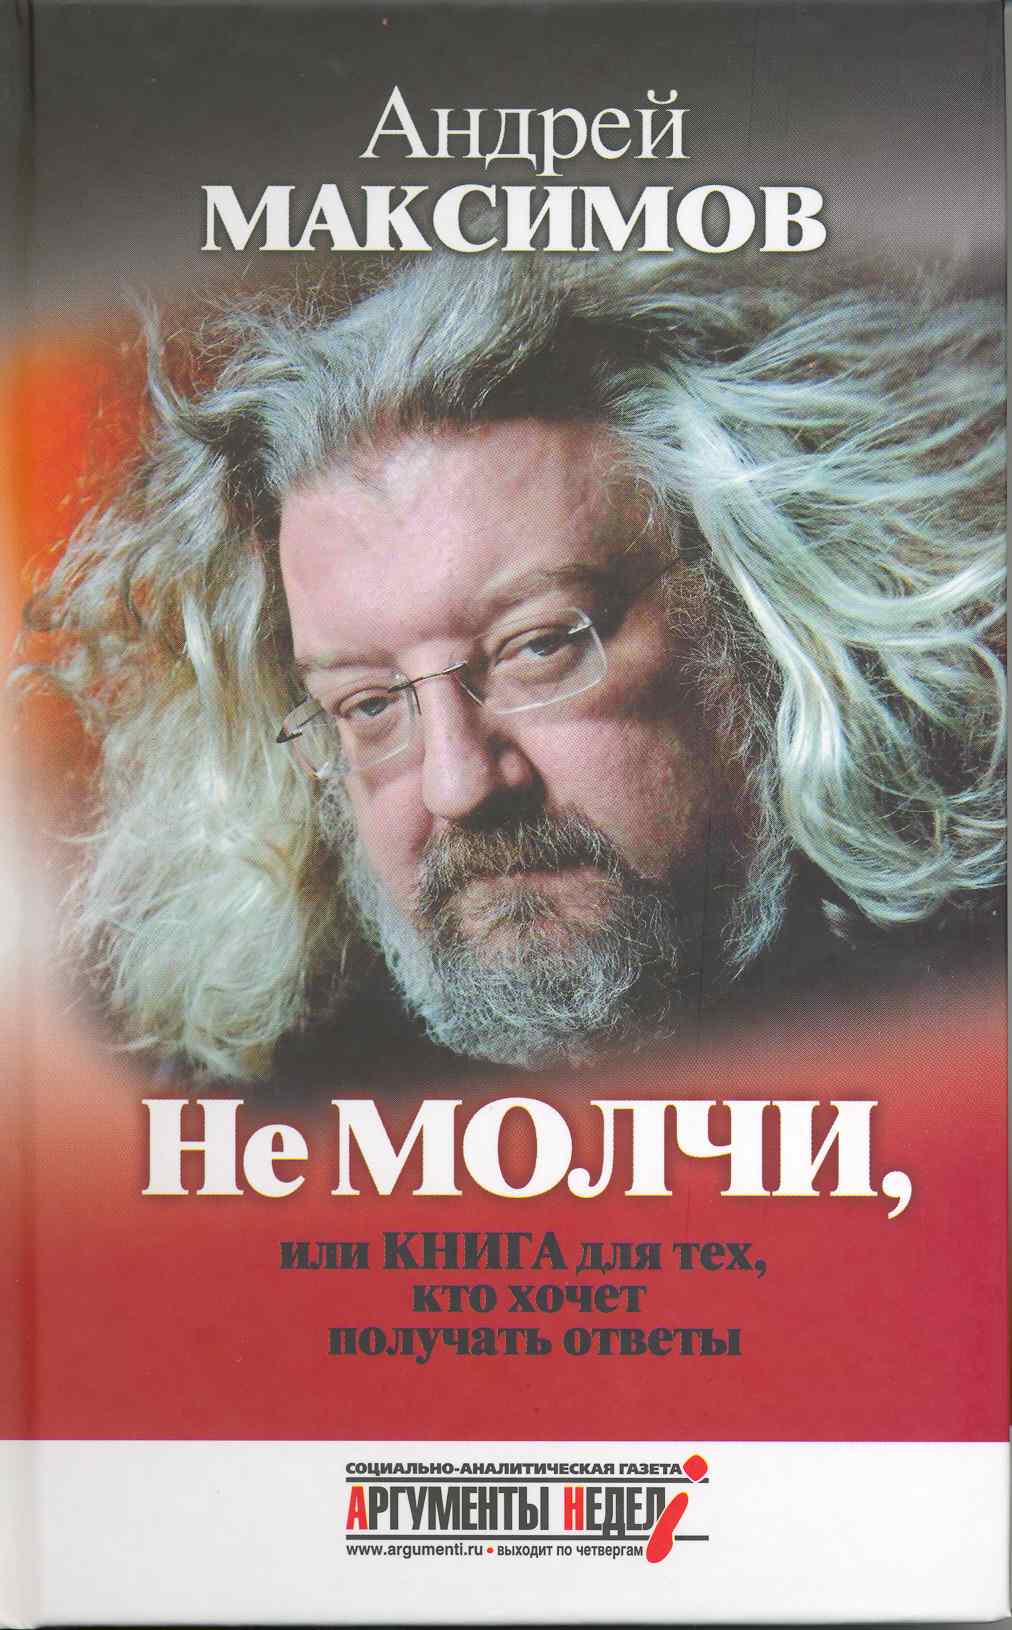 Максимов Андрей Маркович - Не молчи, или Книга для тех, кто хочет получать ответы